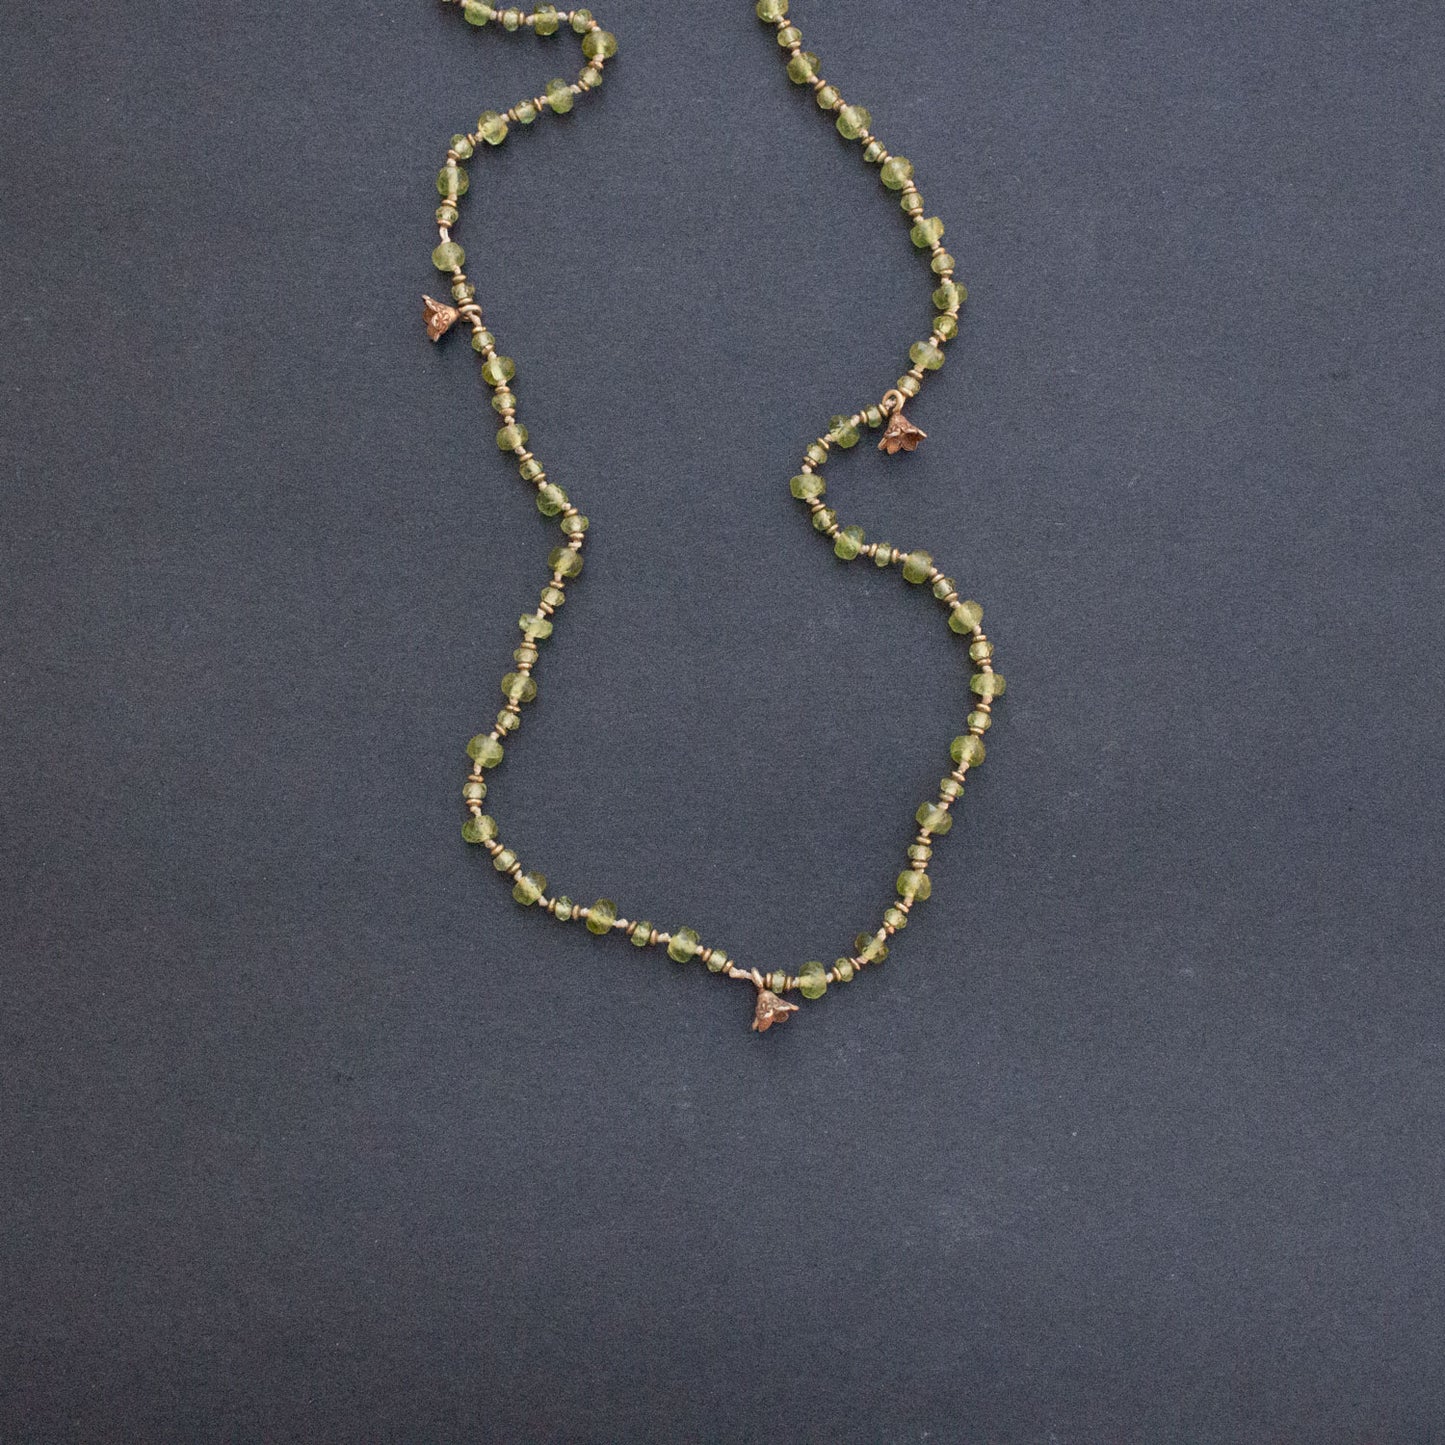 Peridot garden necklace